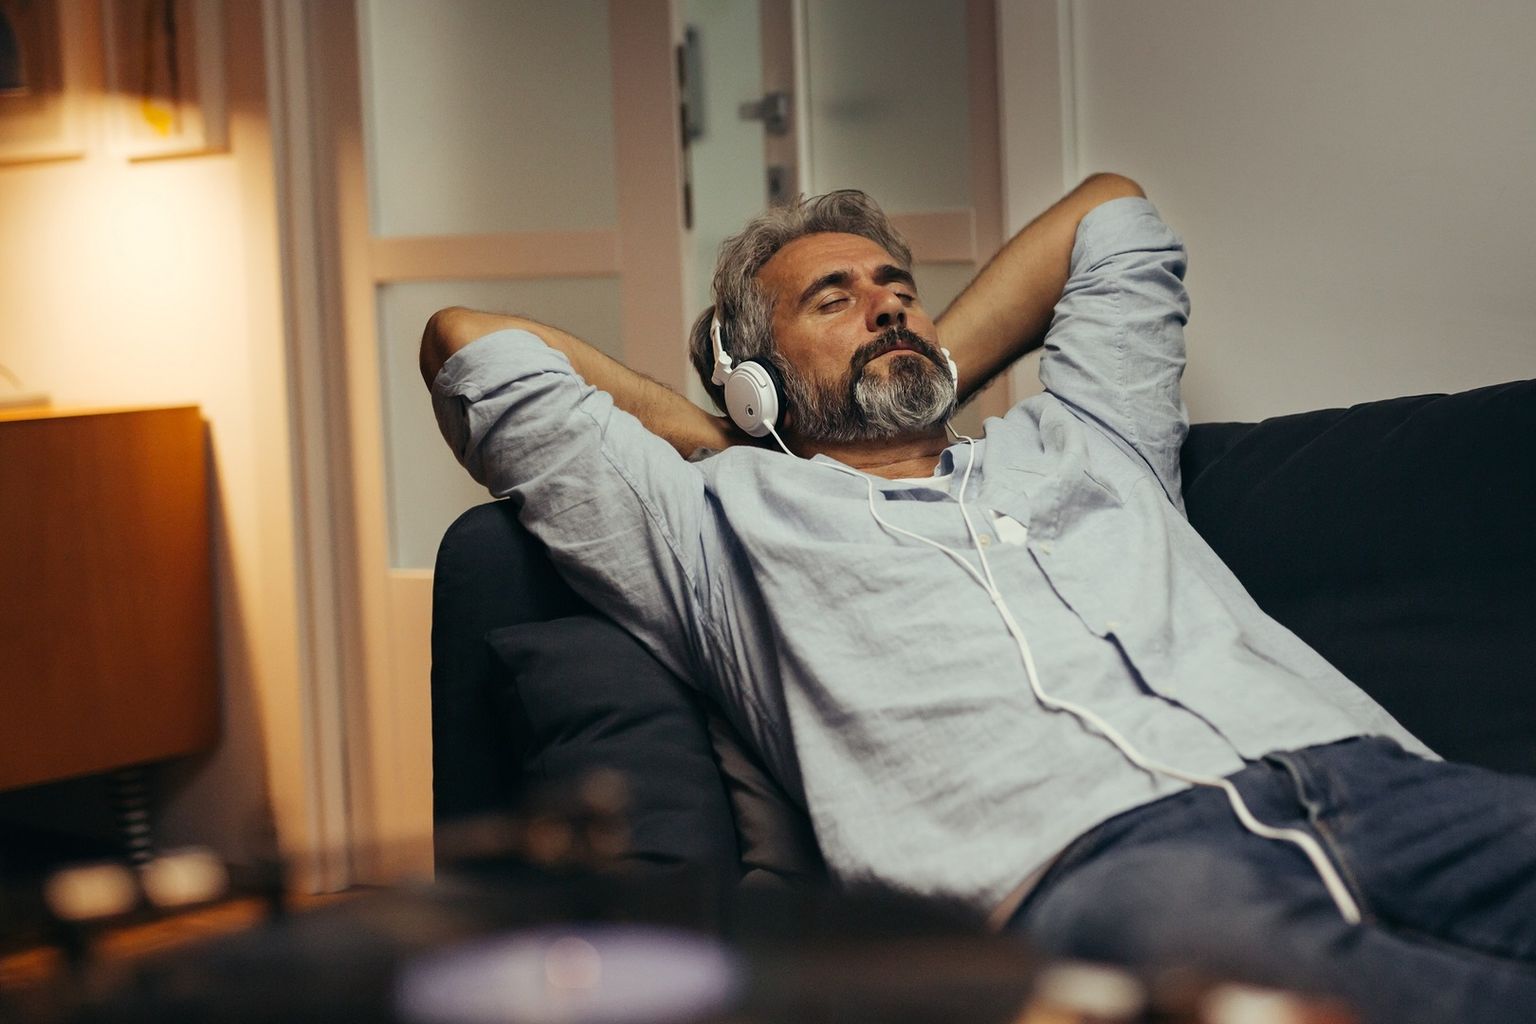 L'uomo si rilassa - Fasi regolari di rilassamento aiutano l'organismo a ridurre gli ormoni dello stress e a prevenire gli effetti negativi.